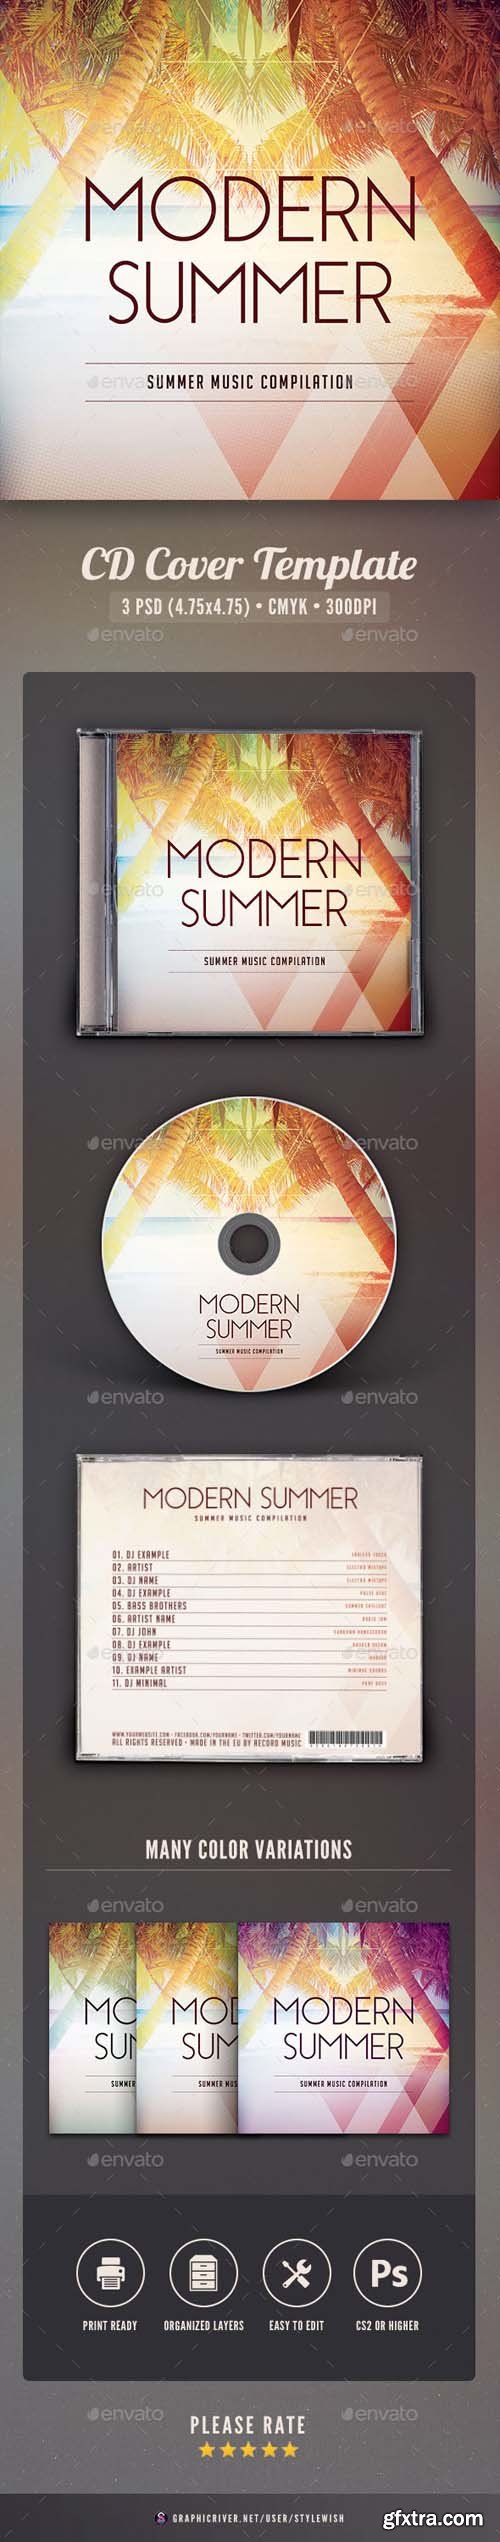 GR - Modern Summer CD Cover Artwork 16455379